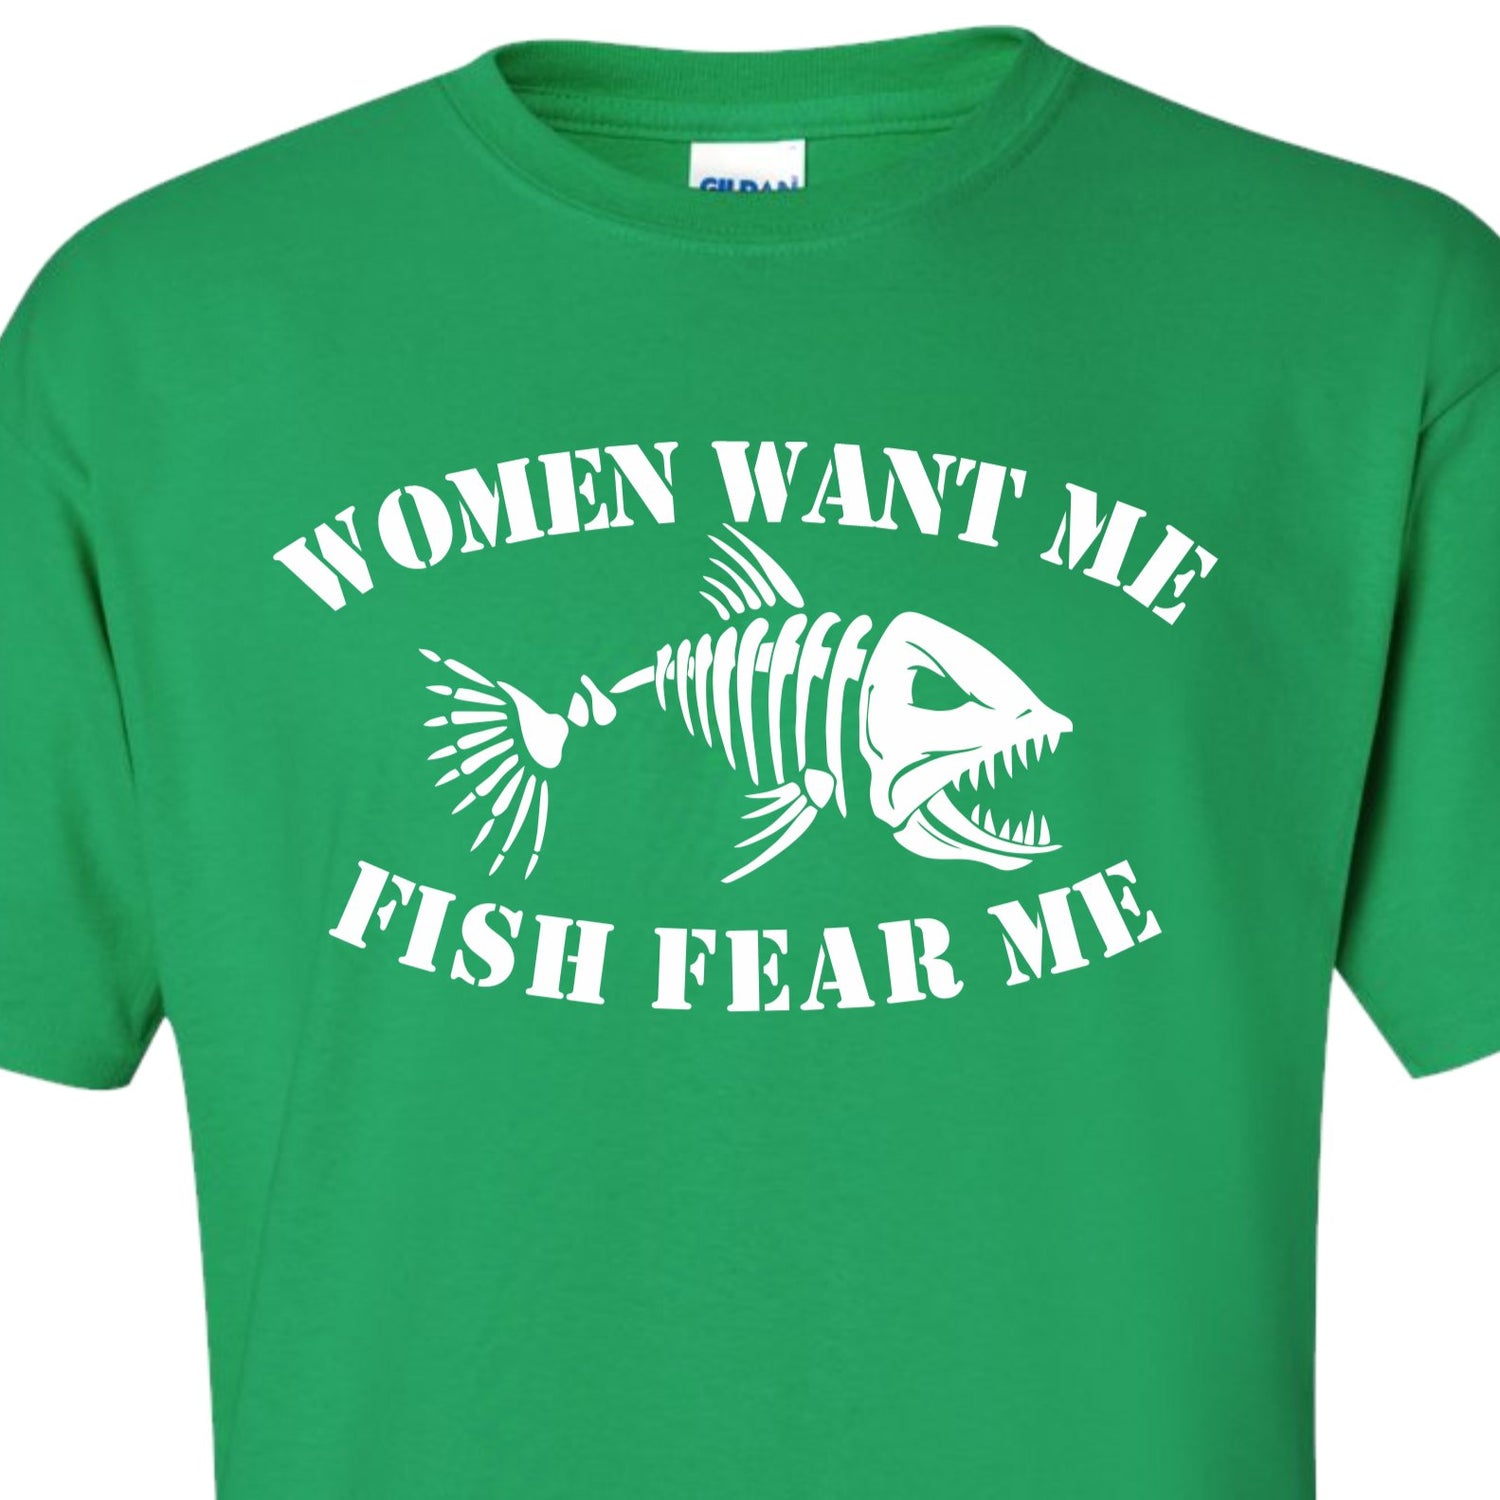 Women Want me, Fish fear me t shirt, fishing tee shirt - SBS T Shop